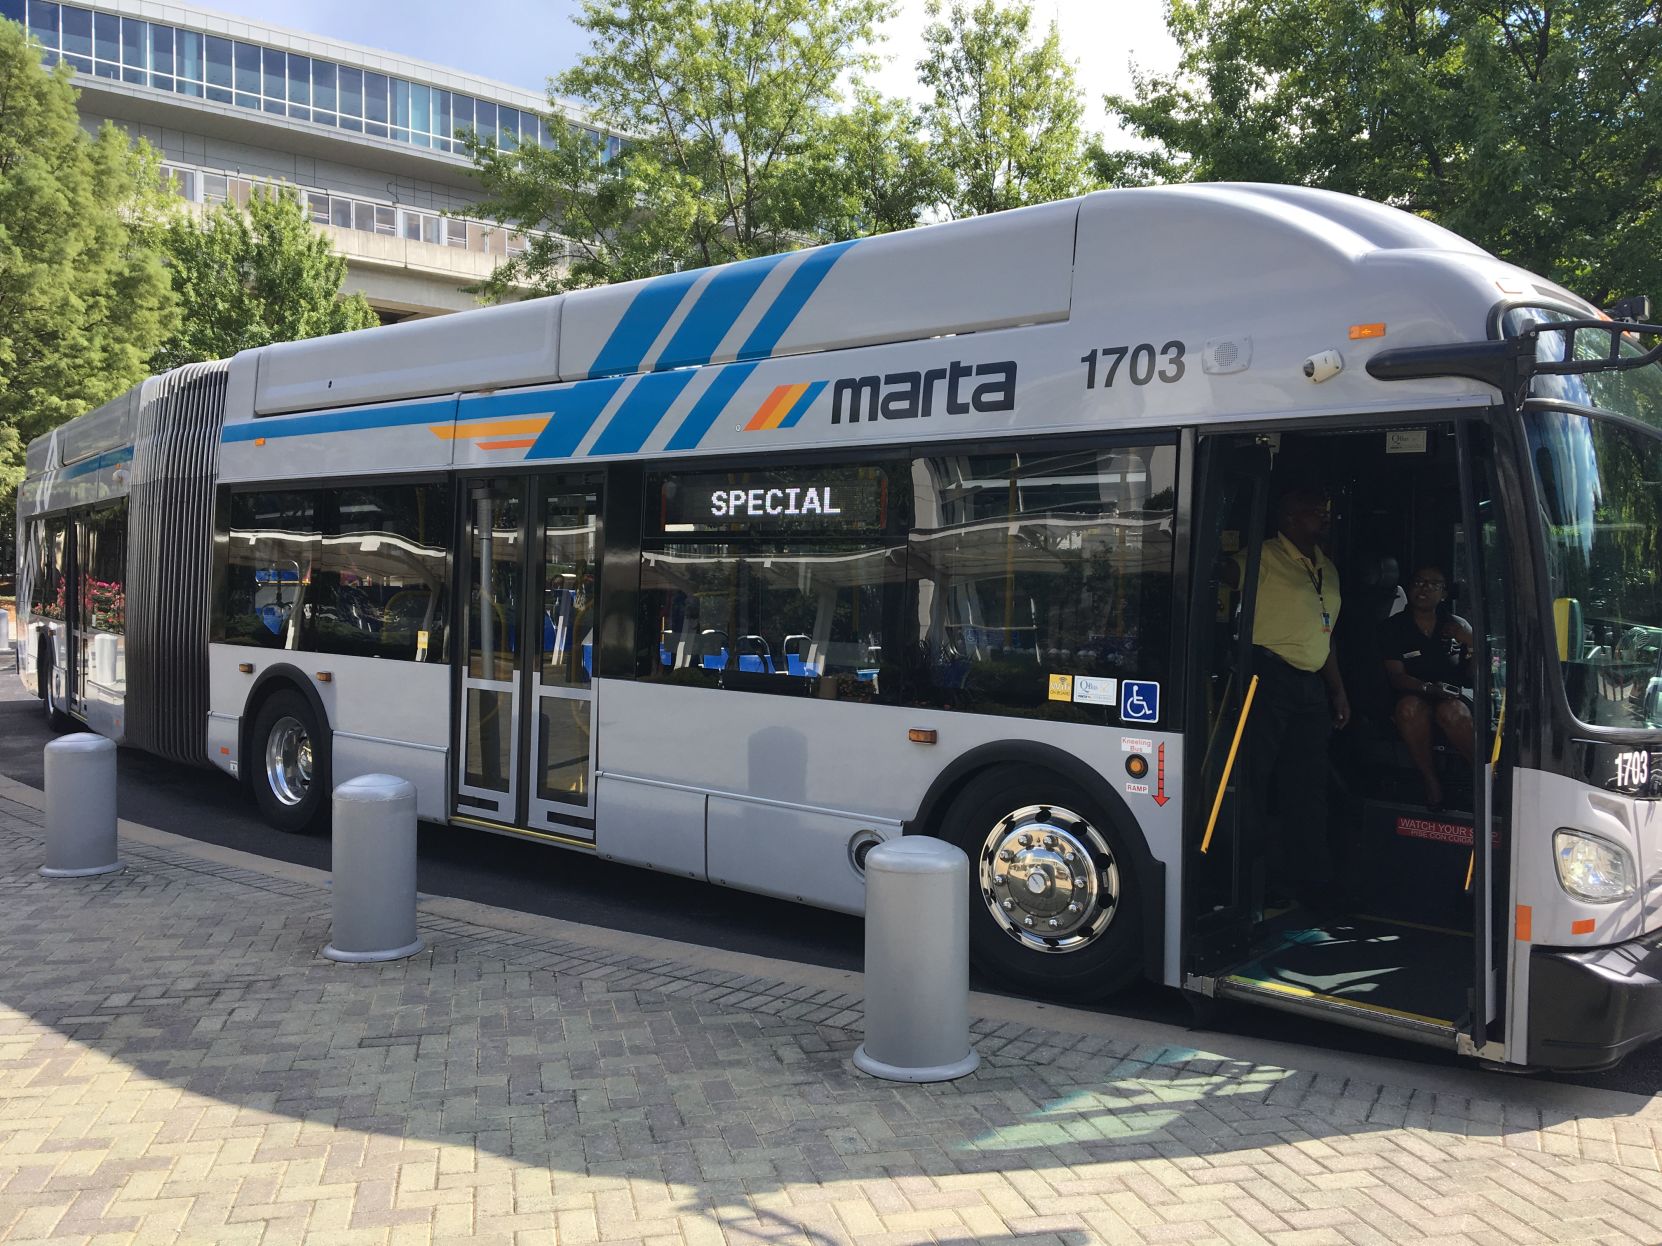 marta bus schedule 55